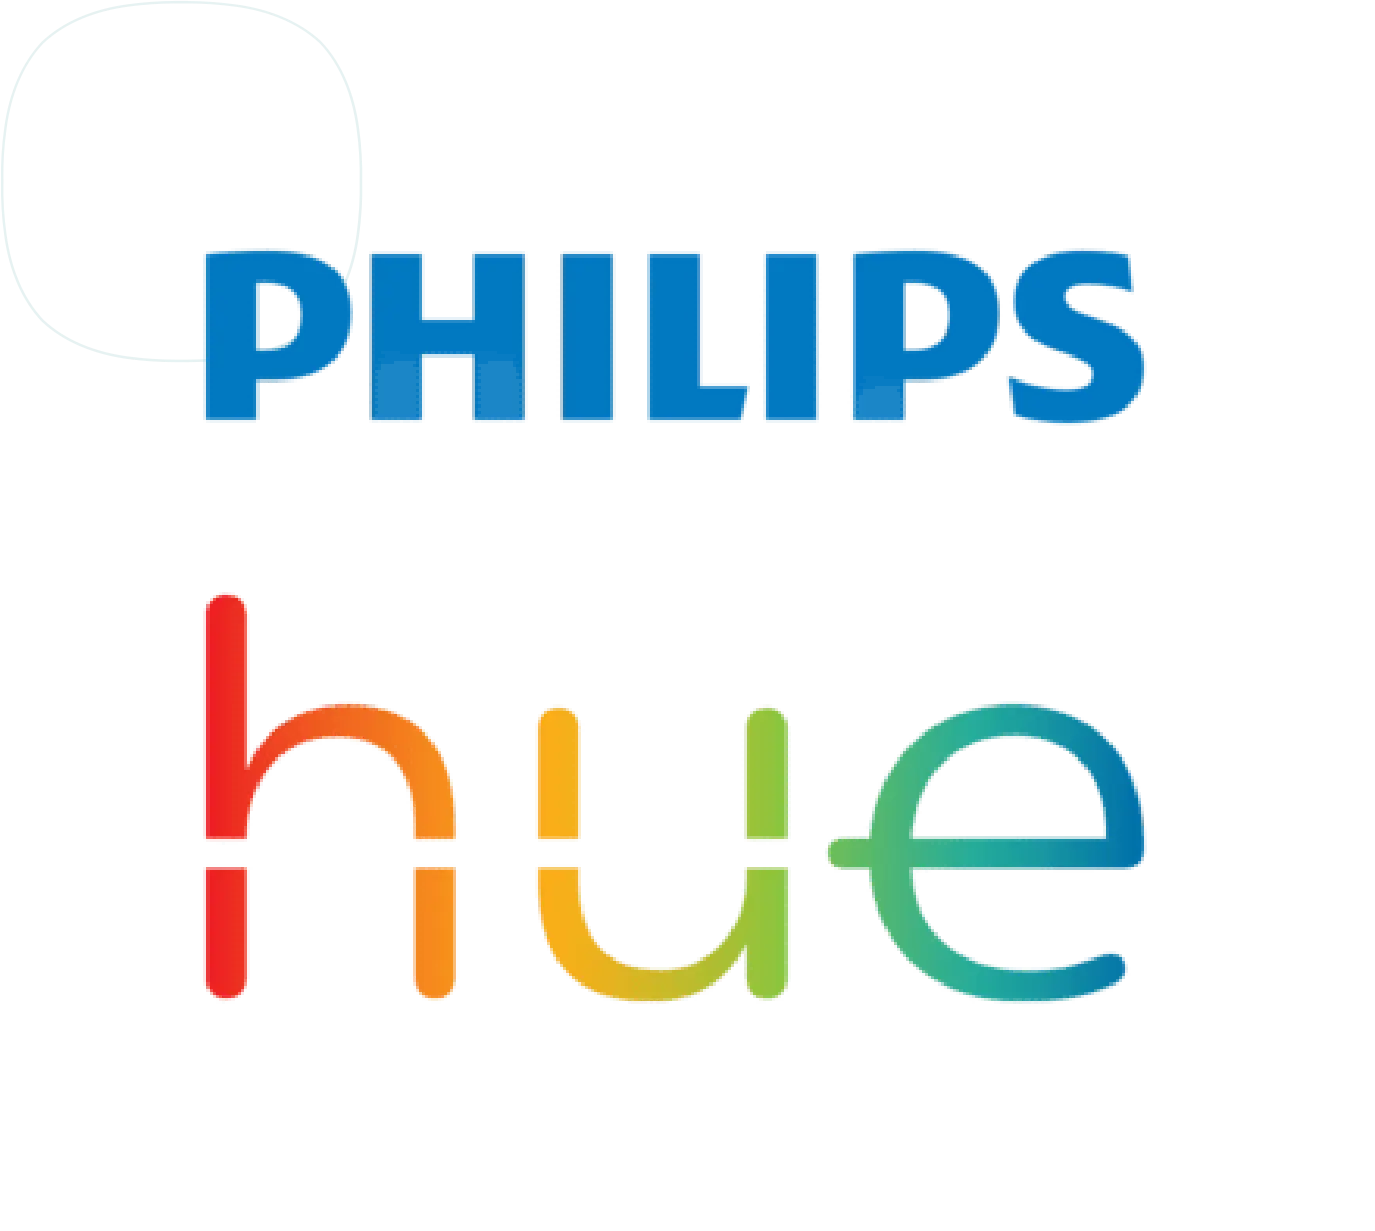 Philips.